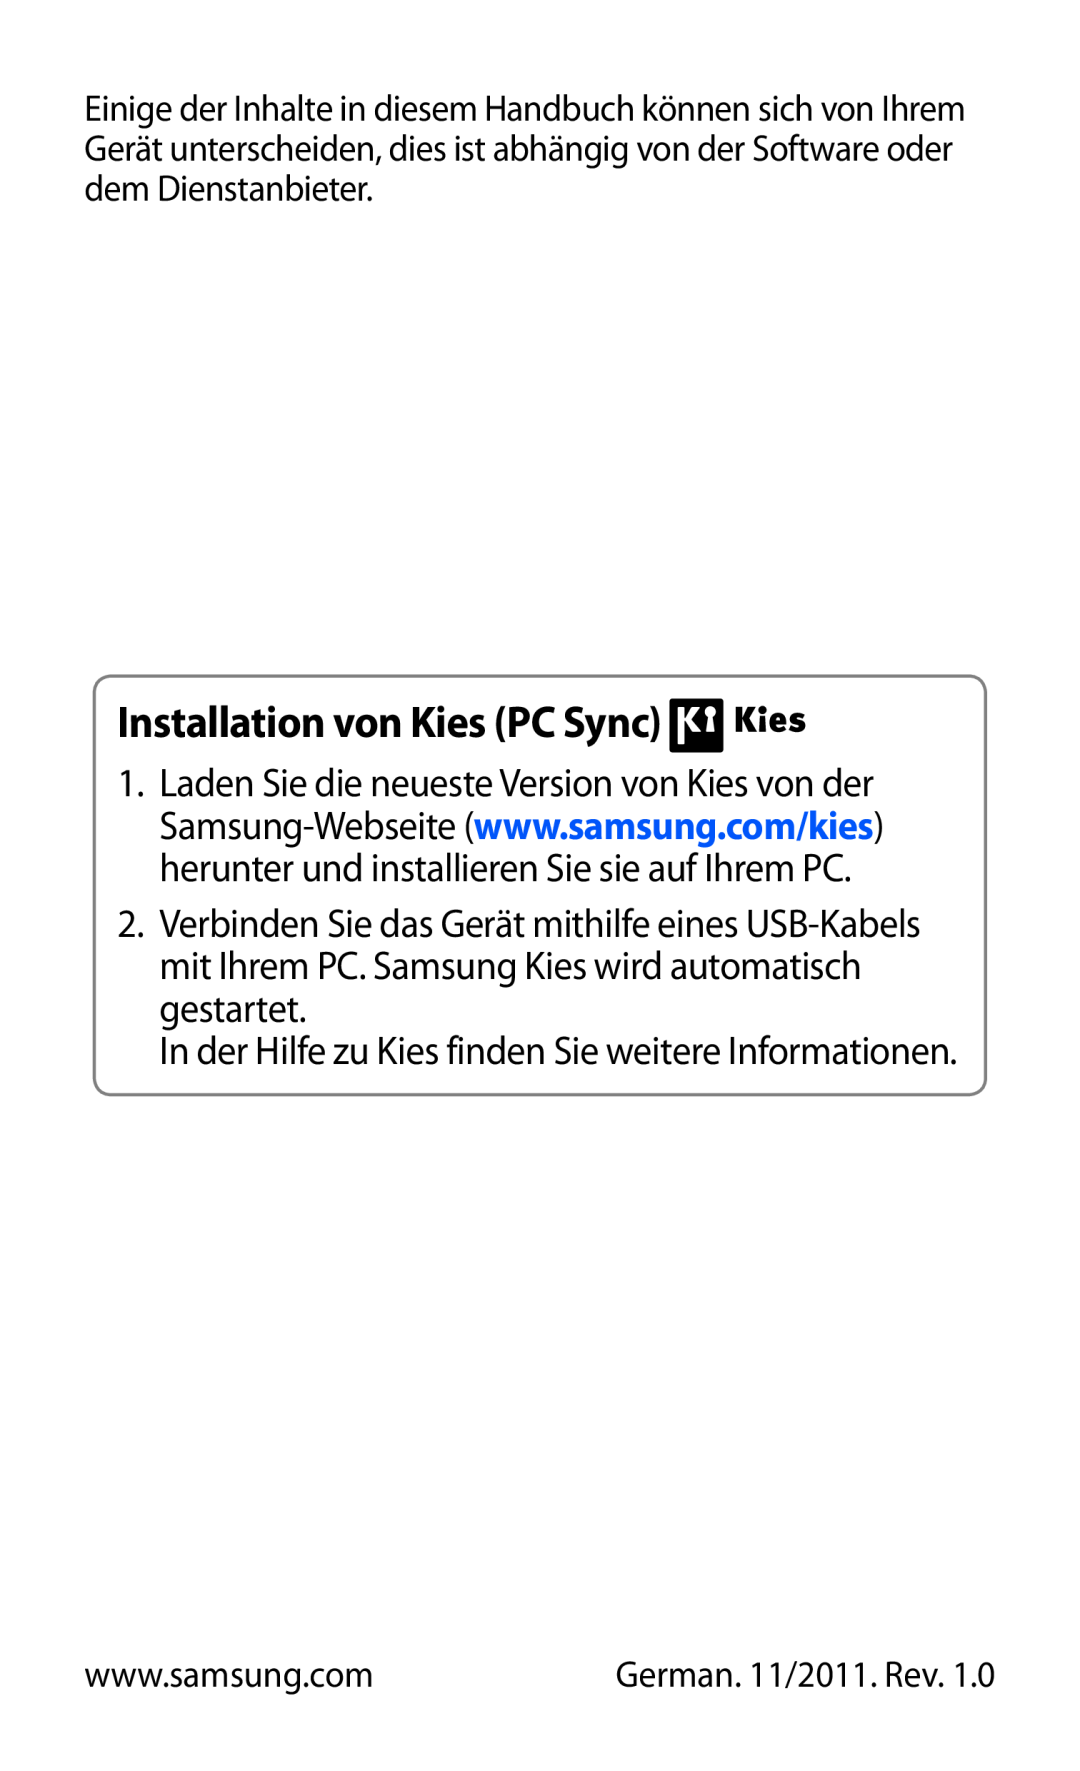 Samsung GT-P7501FKADBT manual Installation von Kies PC Sync, In der Hilfe zu Kies finden Sie weitere Informationen 